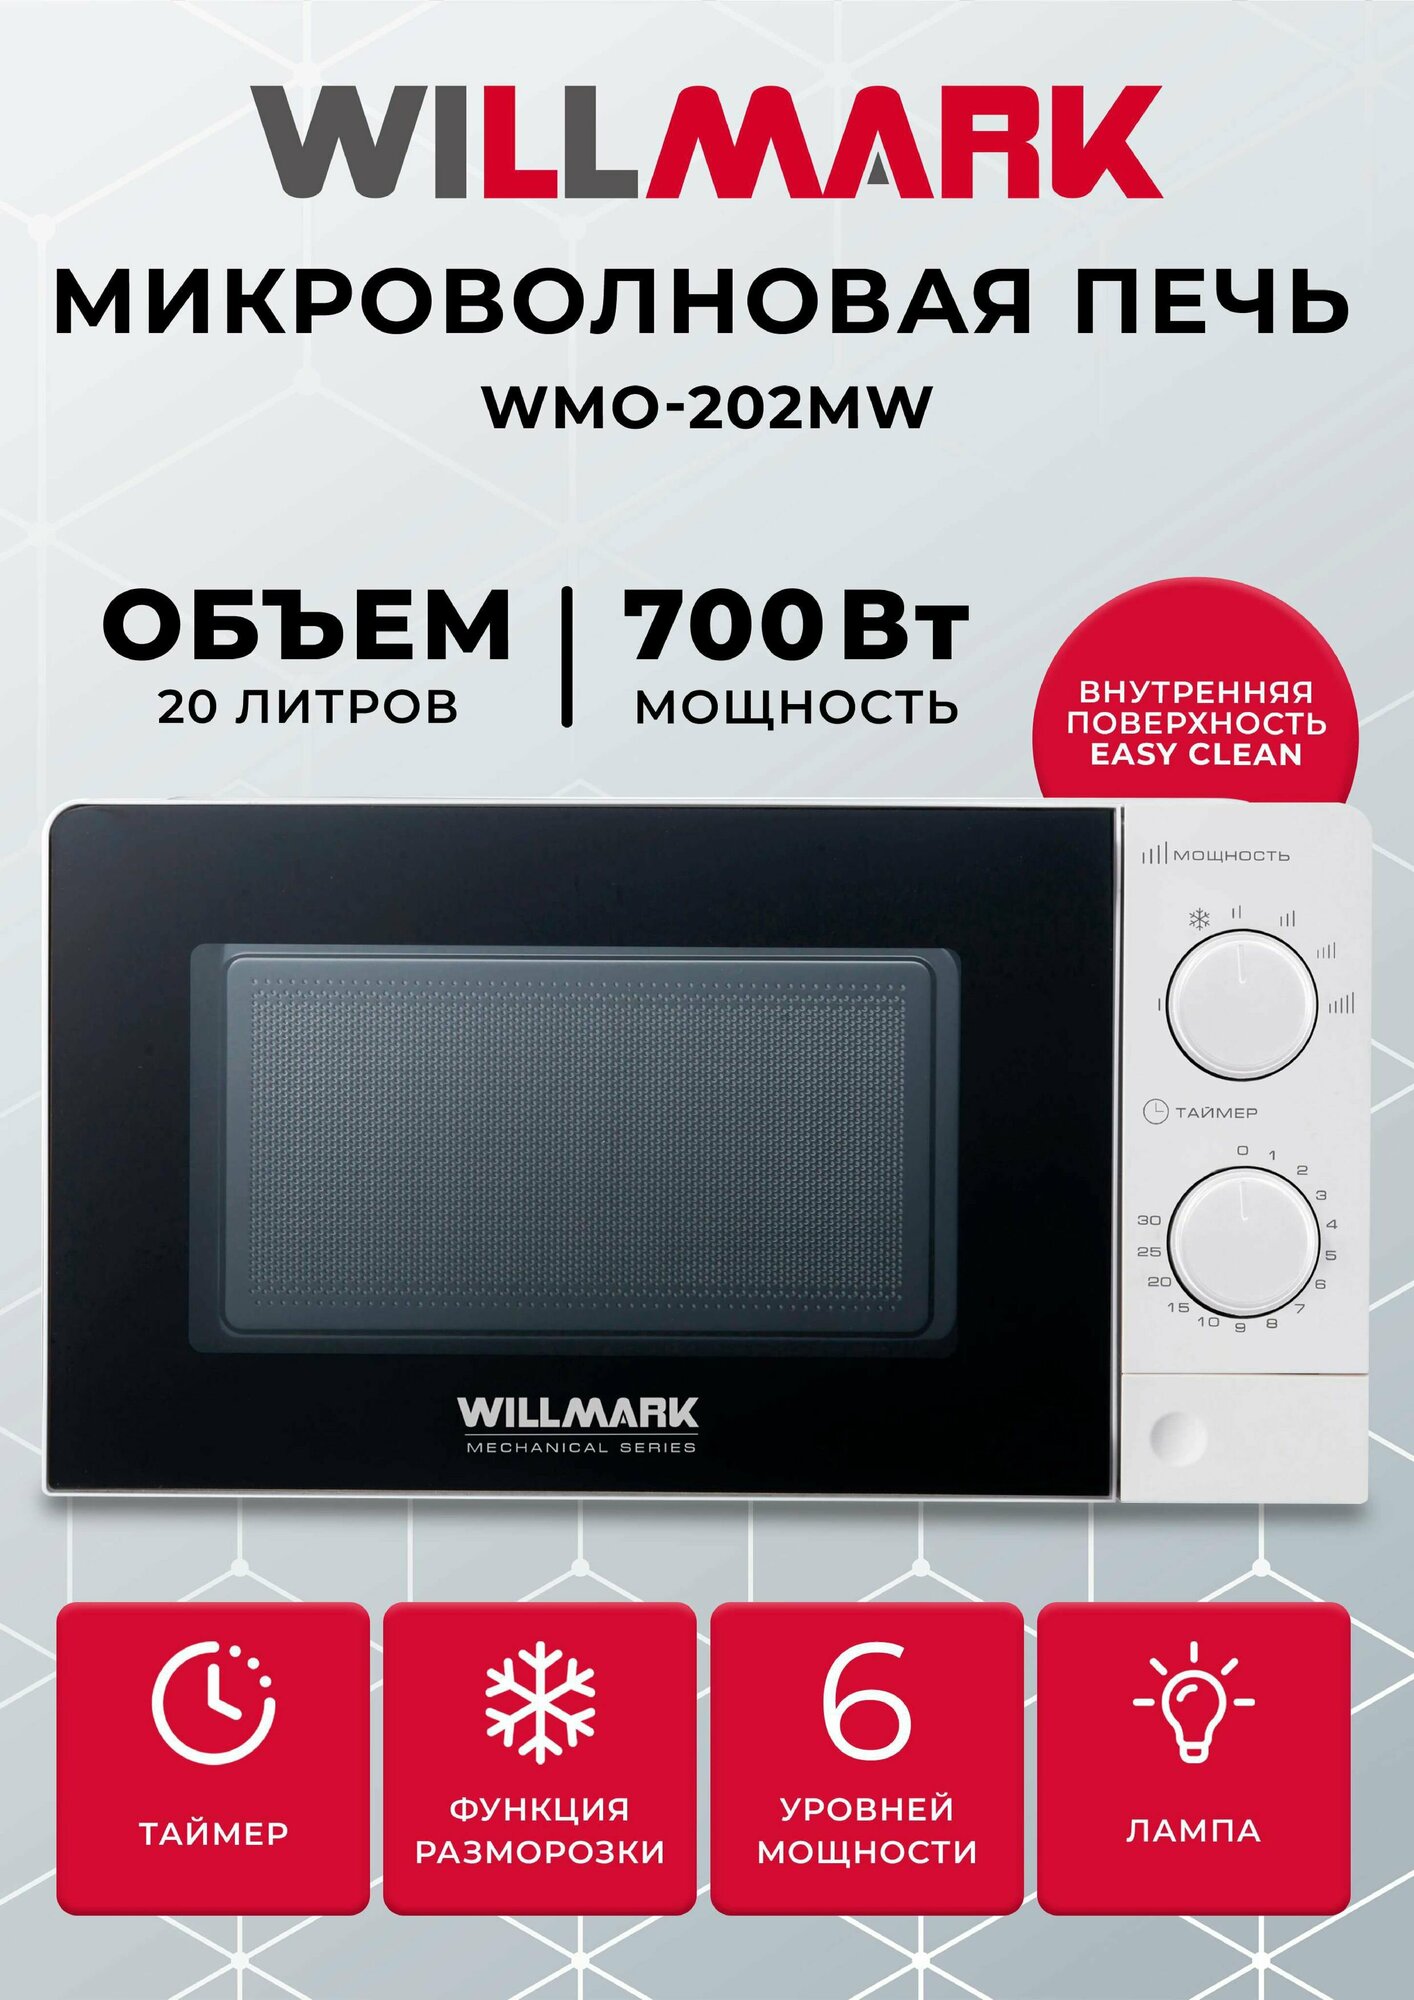 Микроволновая печь WILLMARK WMO-202MW (20л,700Вт,механич.ПУ,кнопка д/л откр.дверцы,6 ур.мощн.,белая)